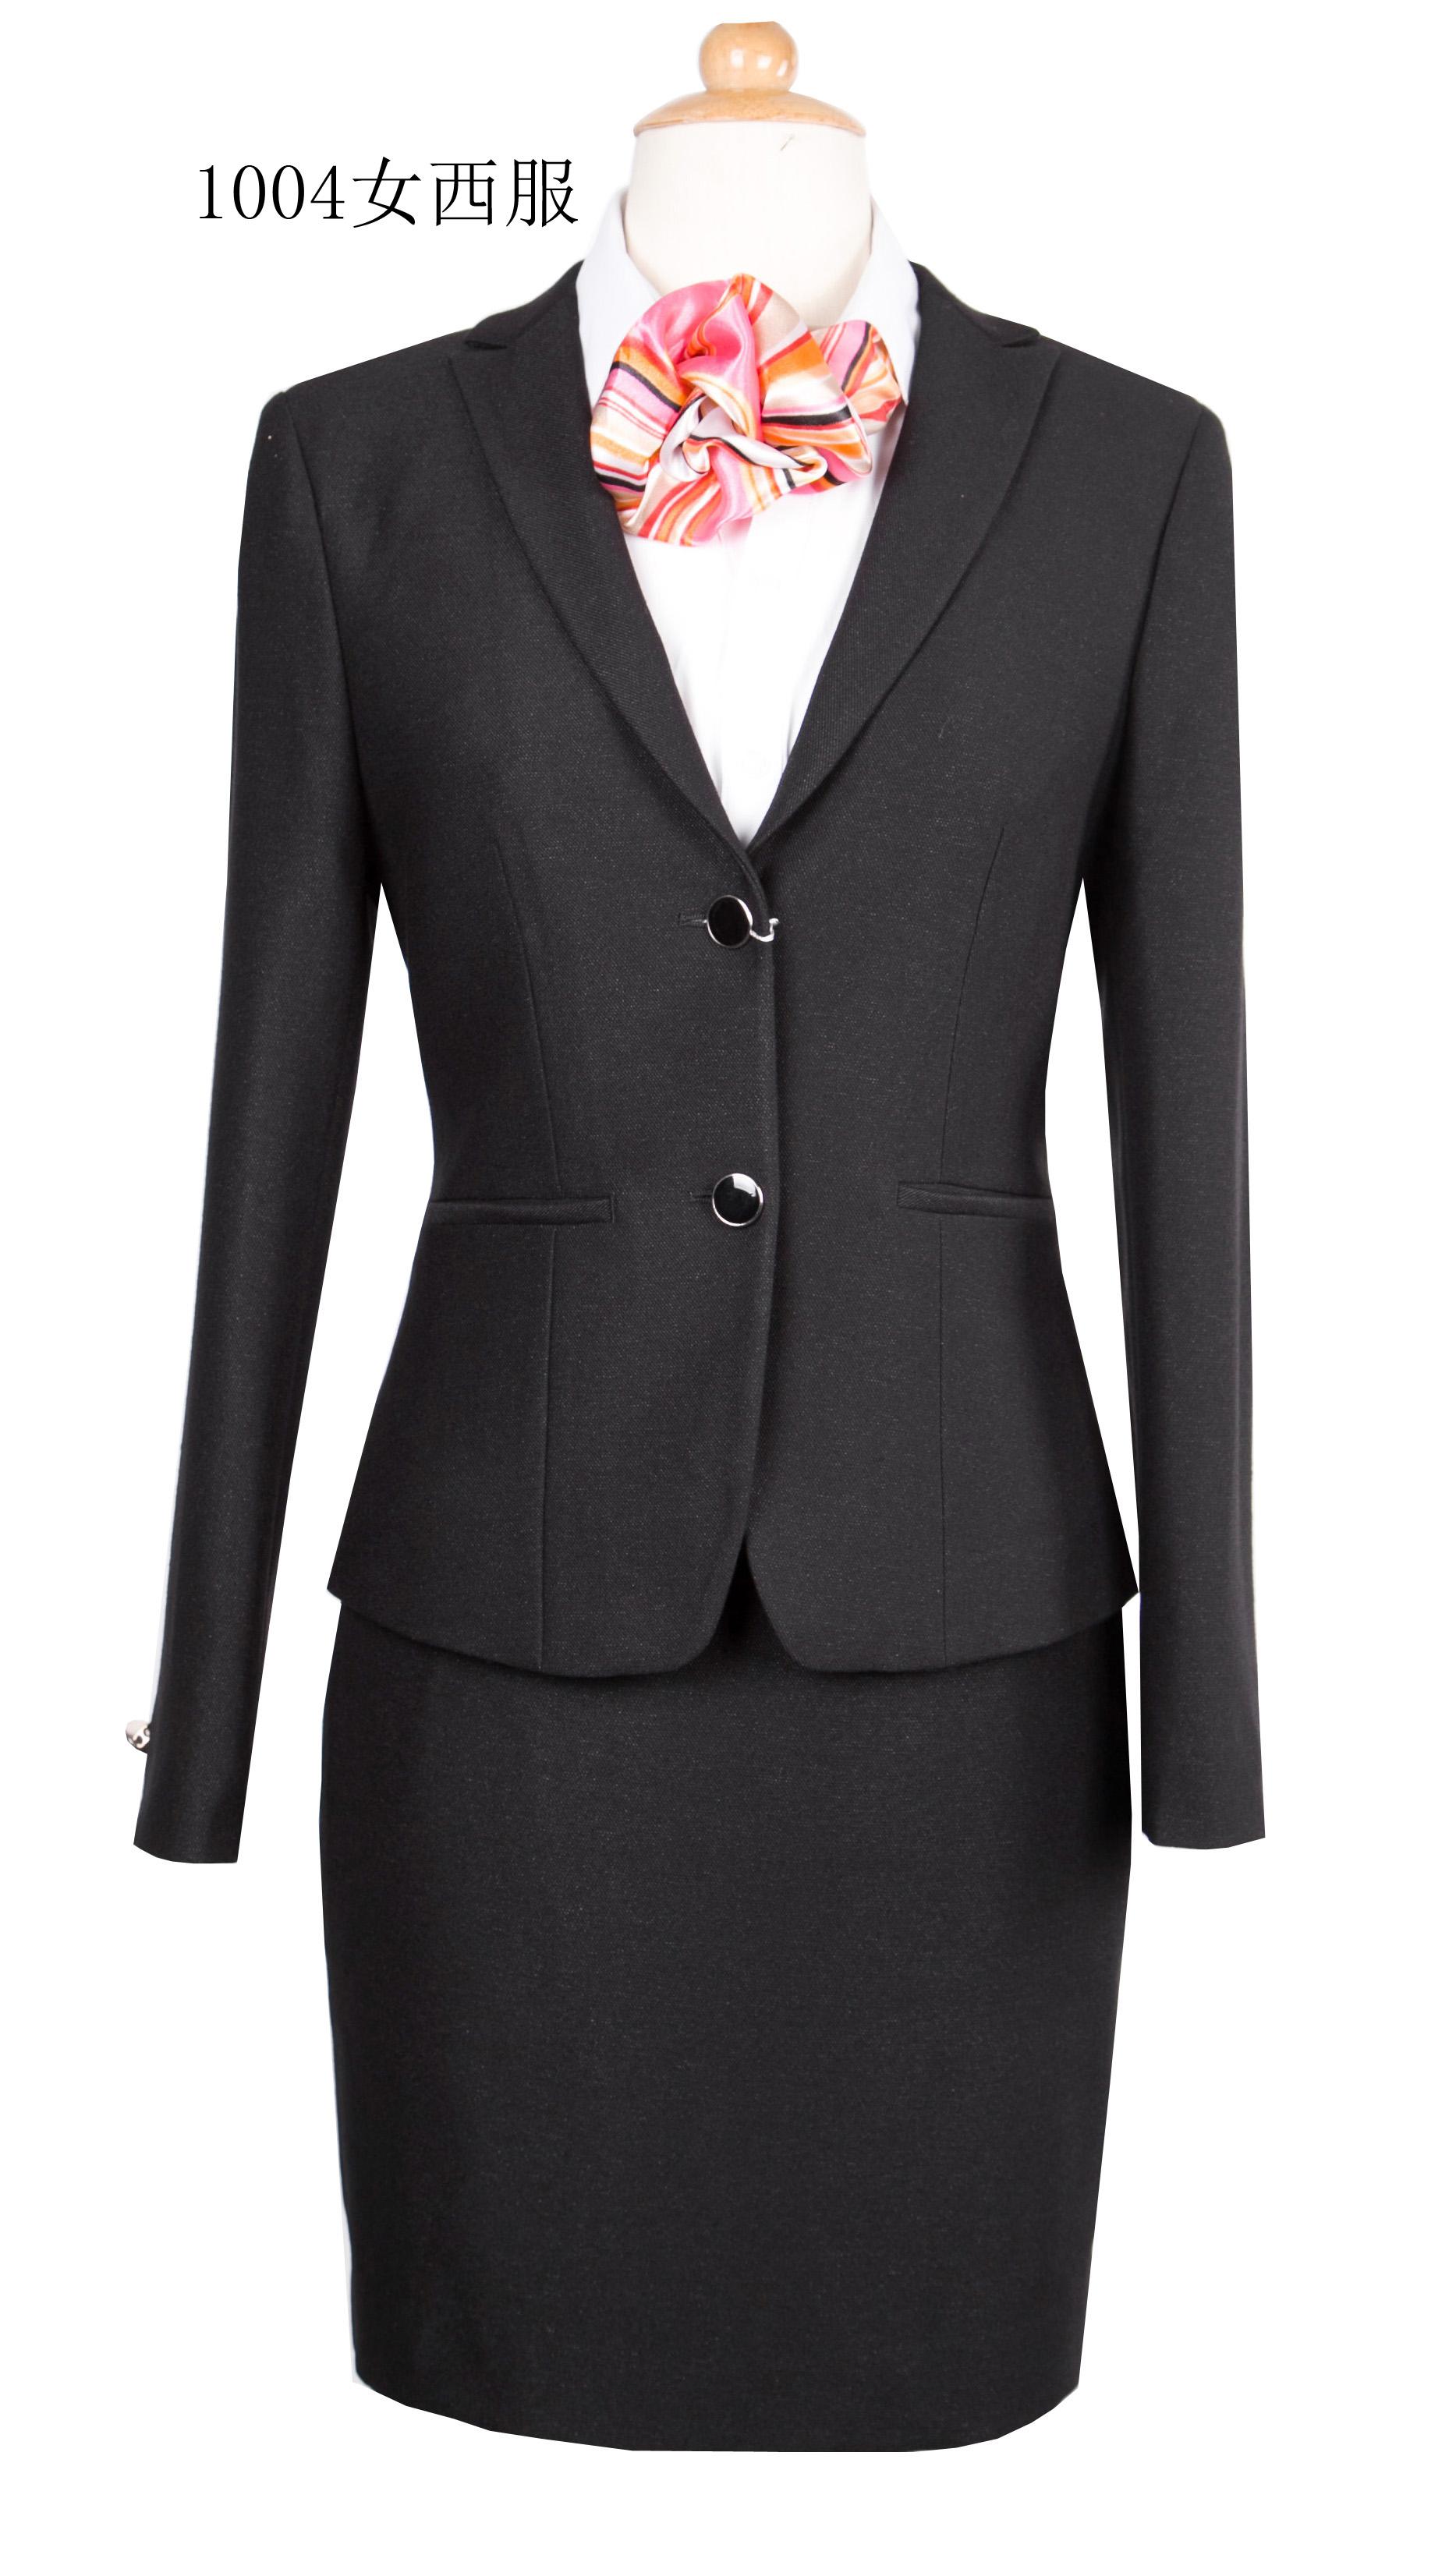 黑色羊毛混纺两粒扣女套装-女装定制 | 拉雅网，拉雅私定，拉雅私人定制，在线定制领导品牌